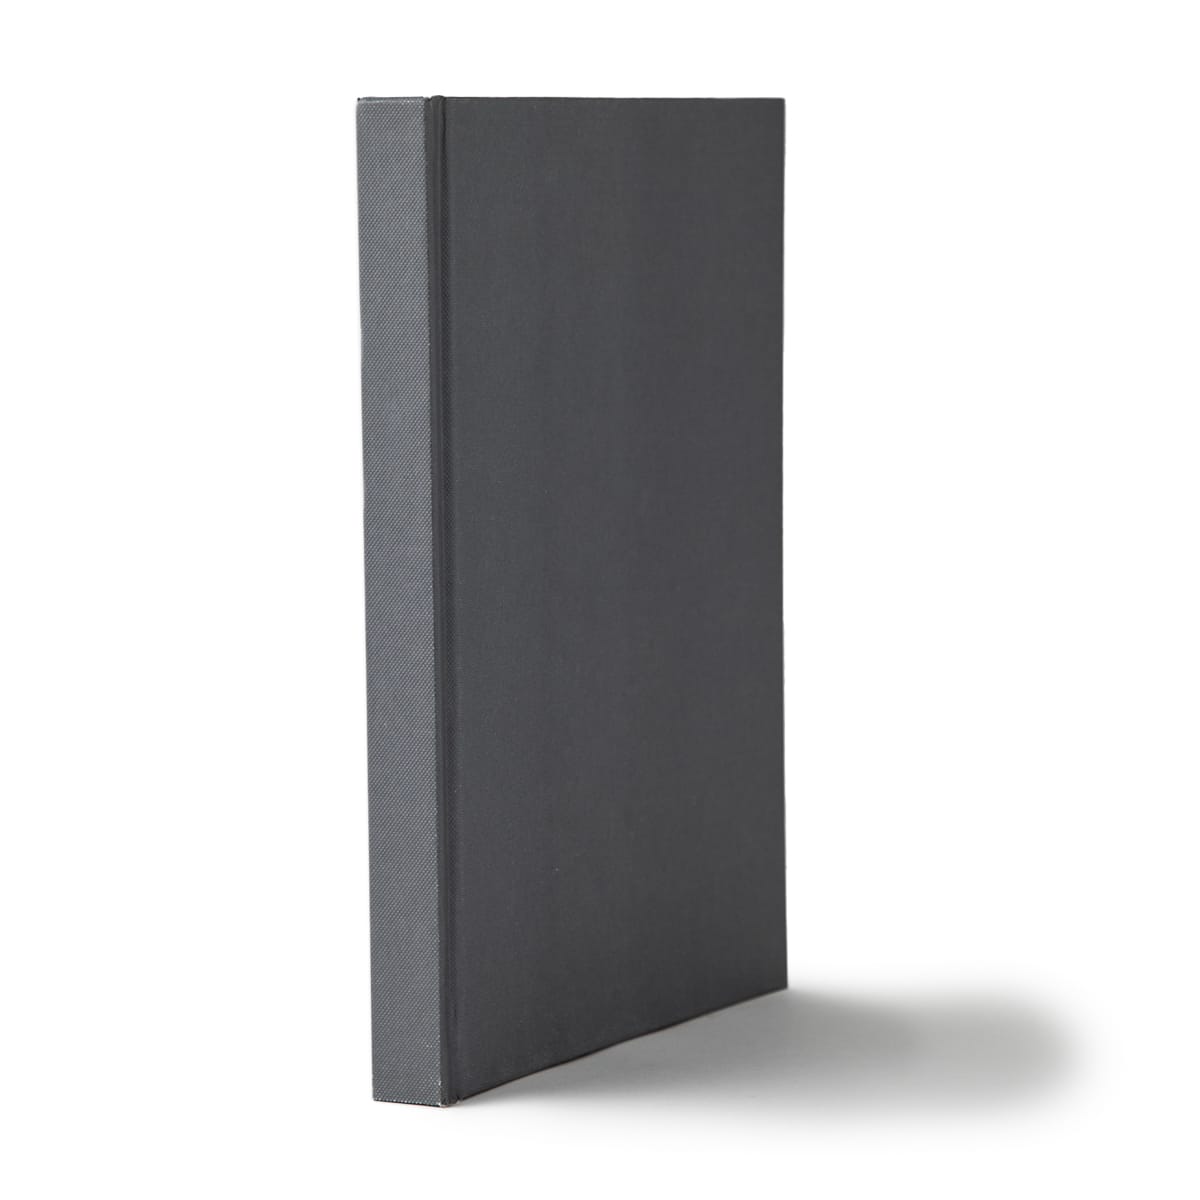 12 Pack: Gray Wirebound Sketchbook by Artist's Loft™, 8.5 x 11